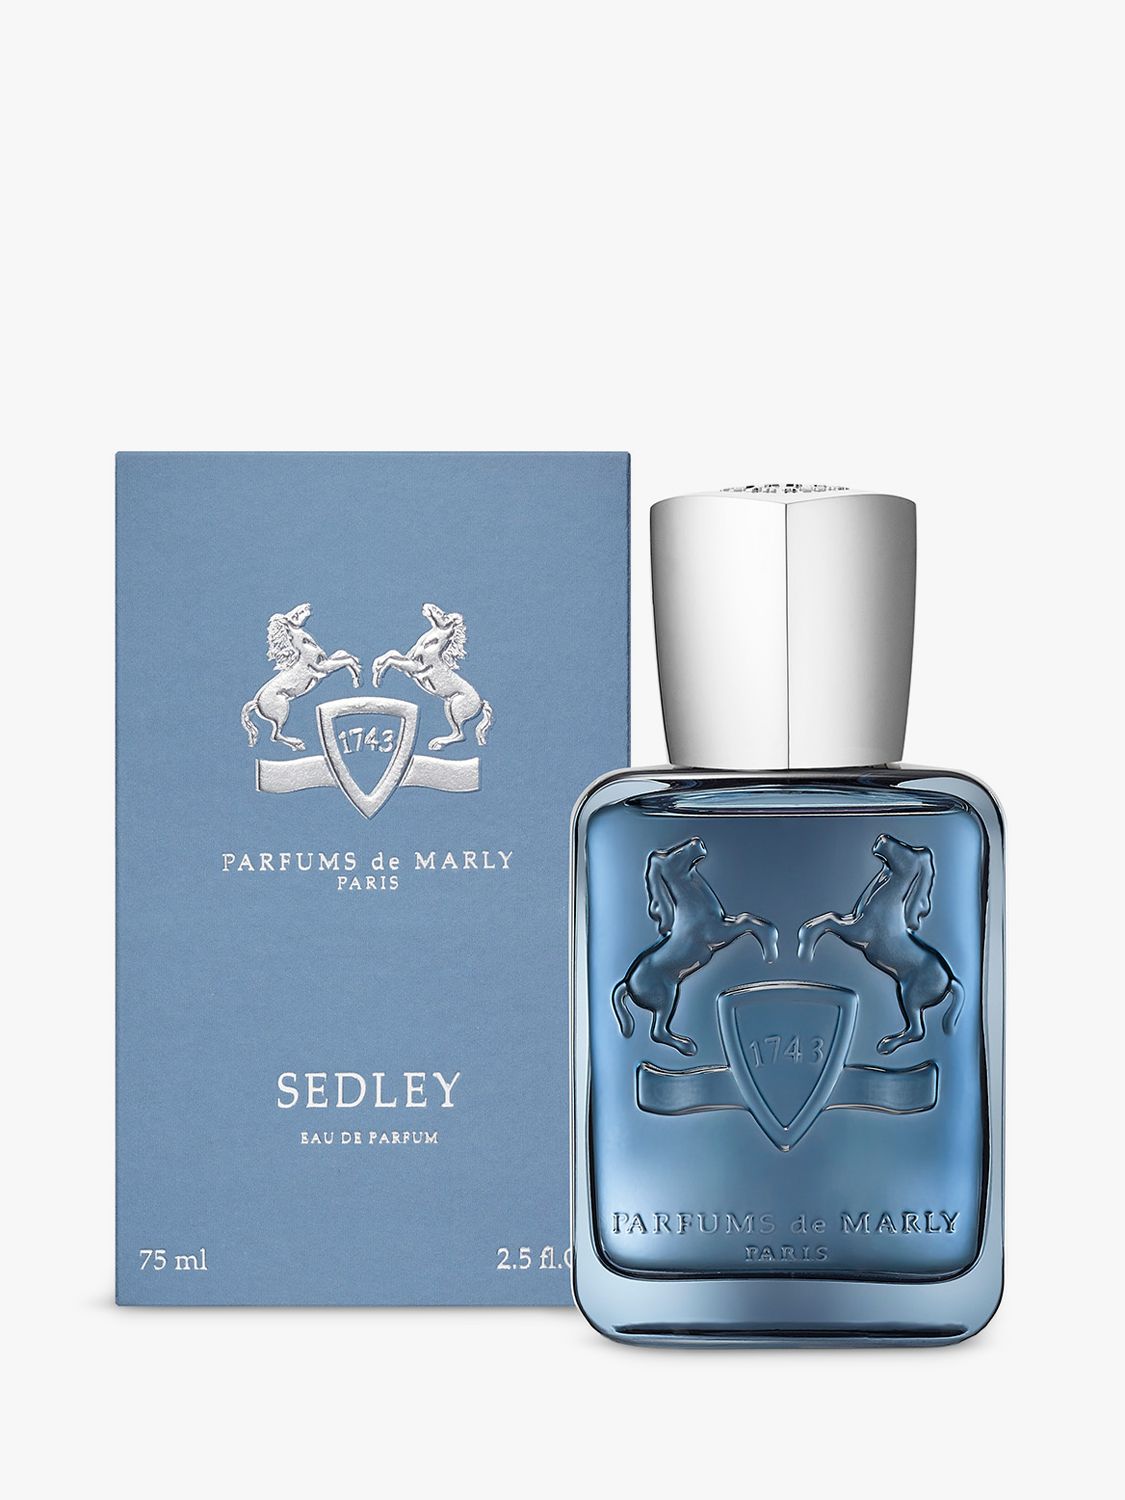 Parfums de Marly Sedley Eau de Parfum, 75ml 1